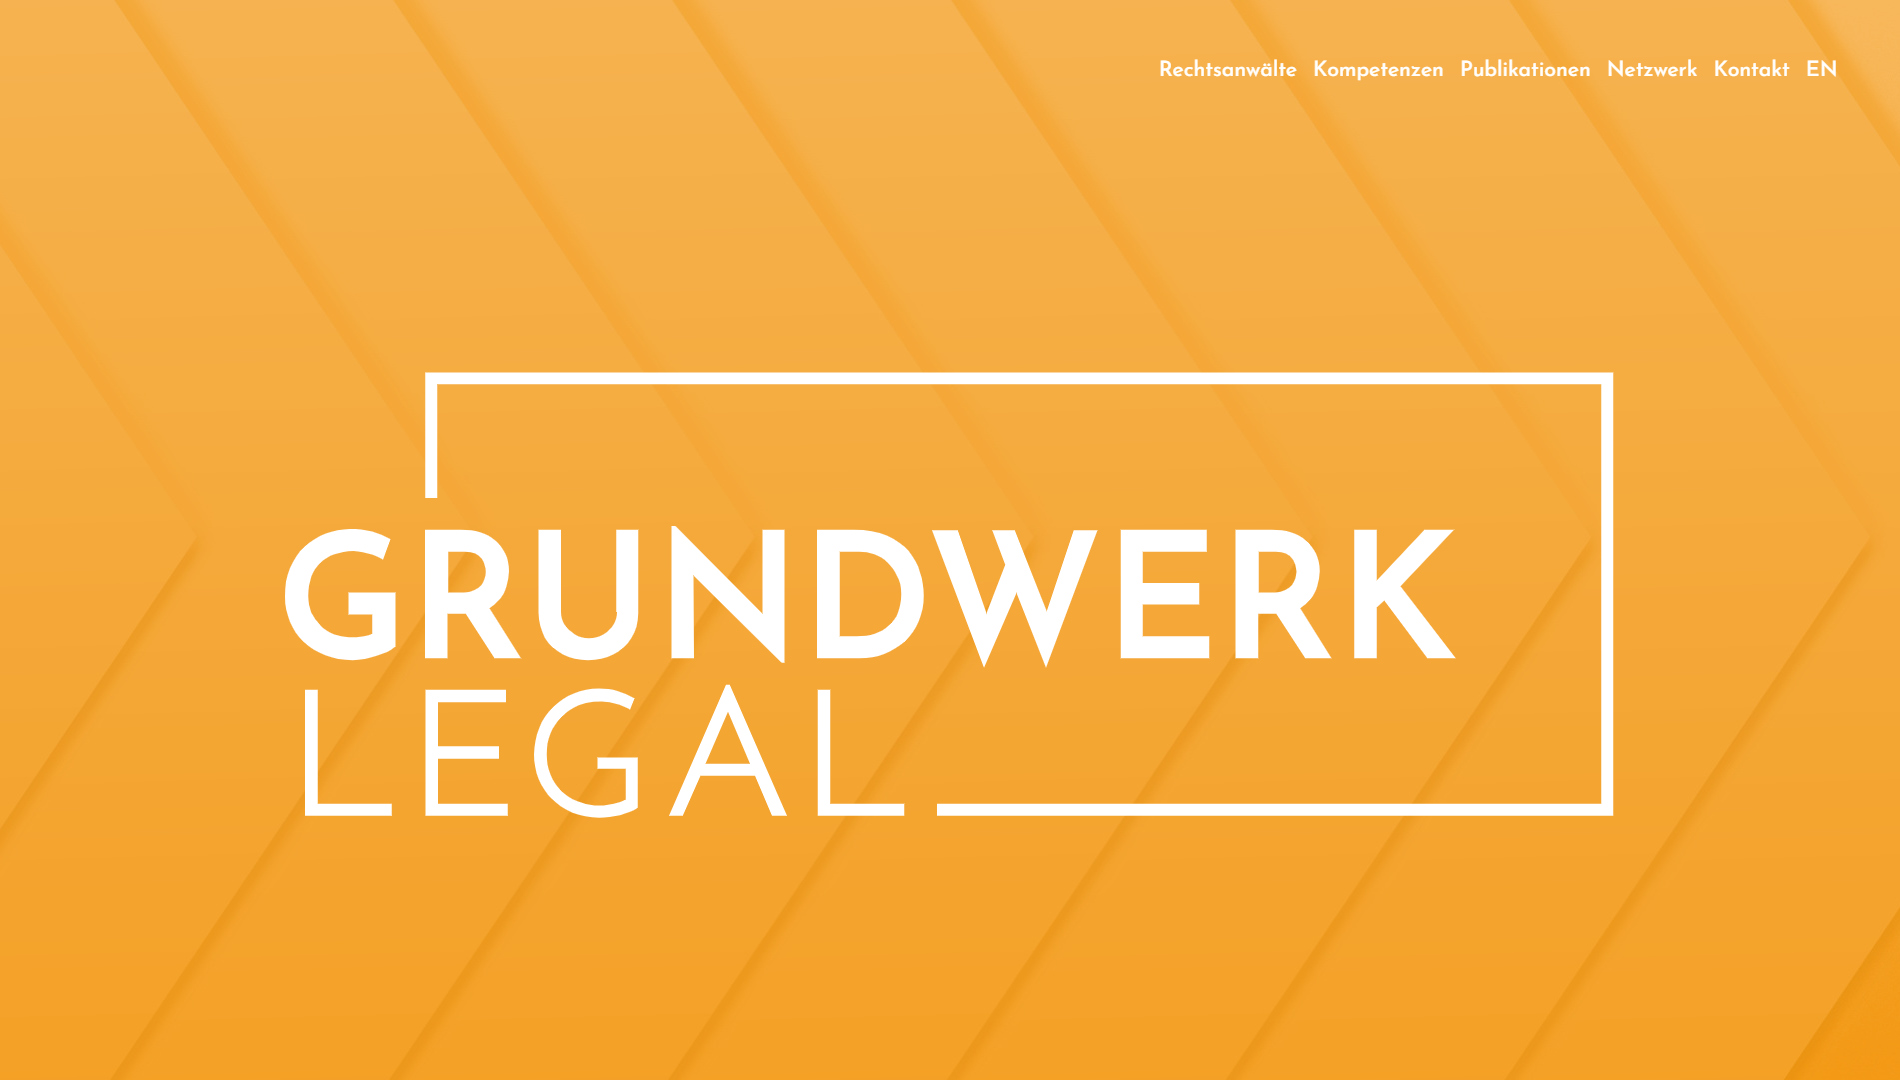 Grundwerk Legel Website Start als Webdesign Inspiration für Anwälte und Kanzleien